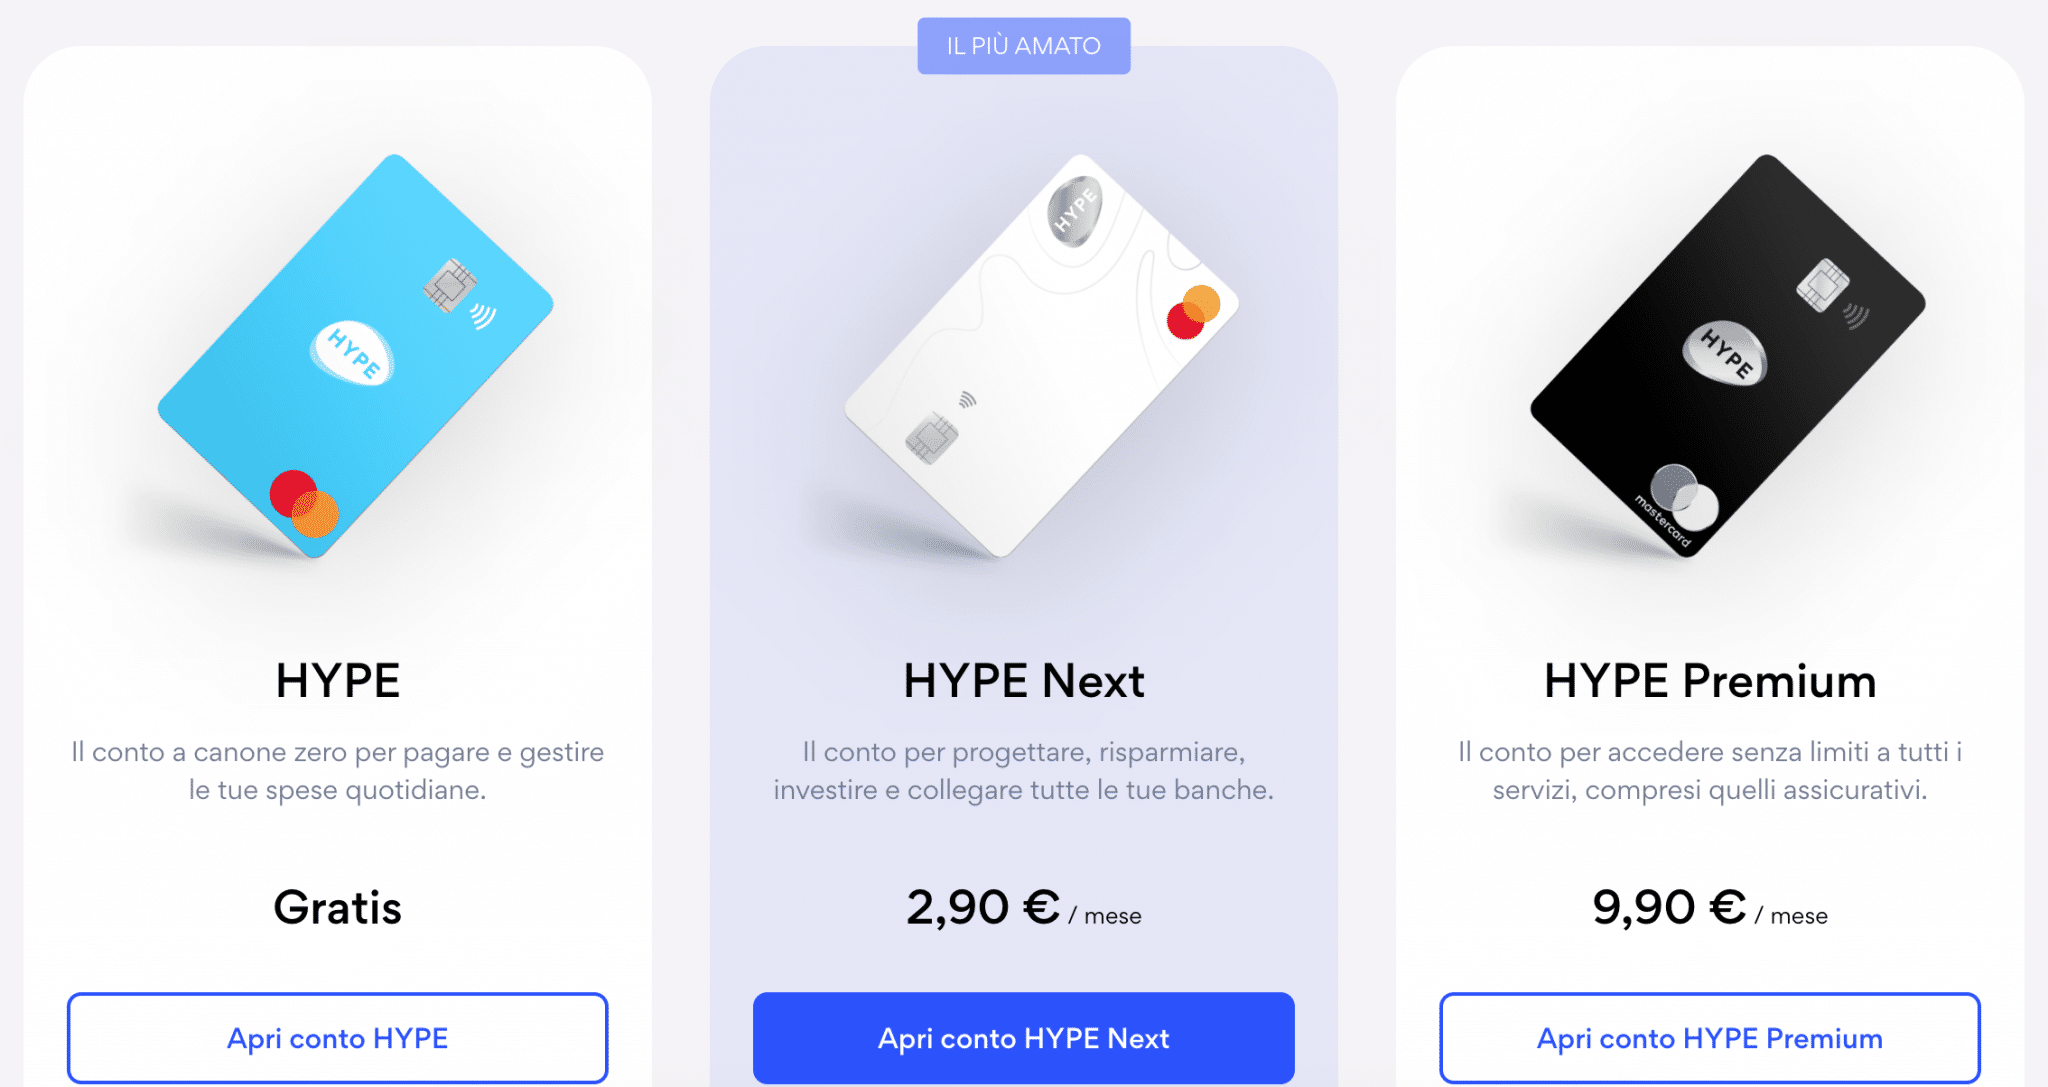 Possiamo scegliere Hype, Hype Next e Hype Premium